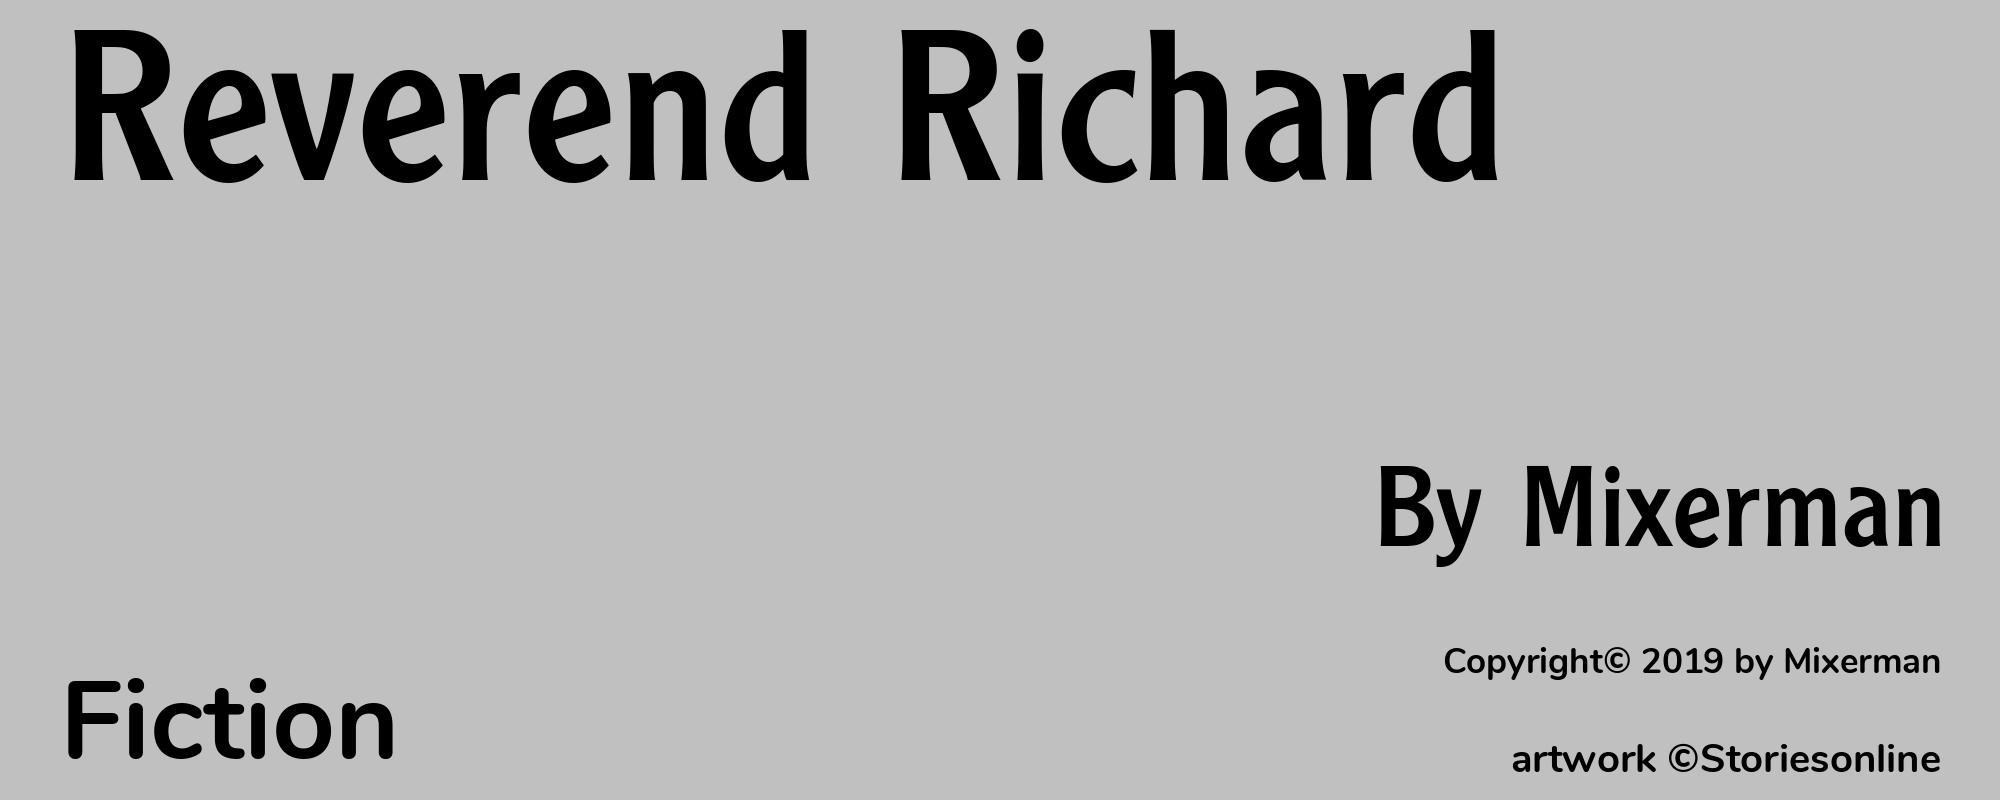 Reverend Richard - Cover